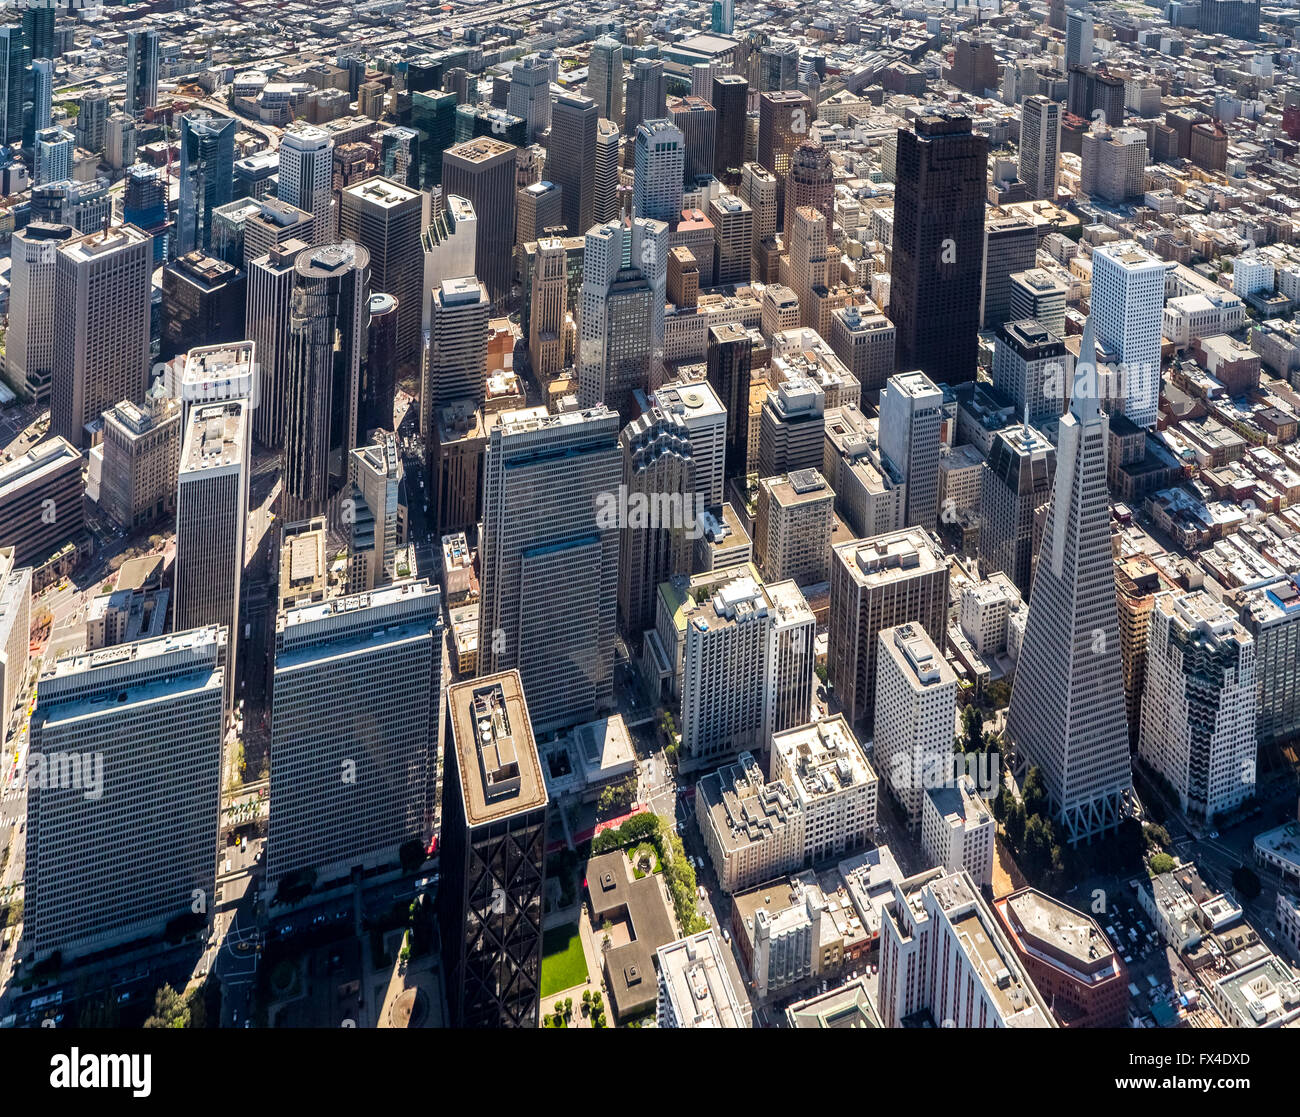 Luftaufnahme, Transamerica Pyramid, mit Blick auf SOMA, Financial District, Downtown, Midtown, San Francisco, San Francisco Bay Stockfoto